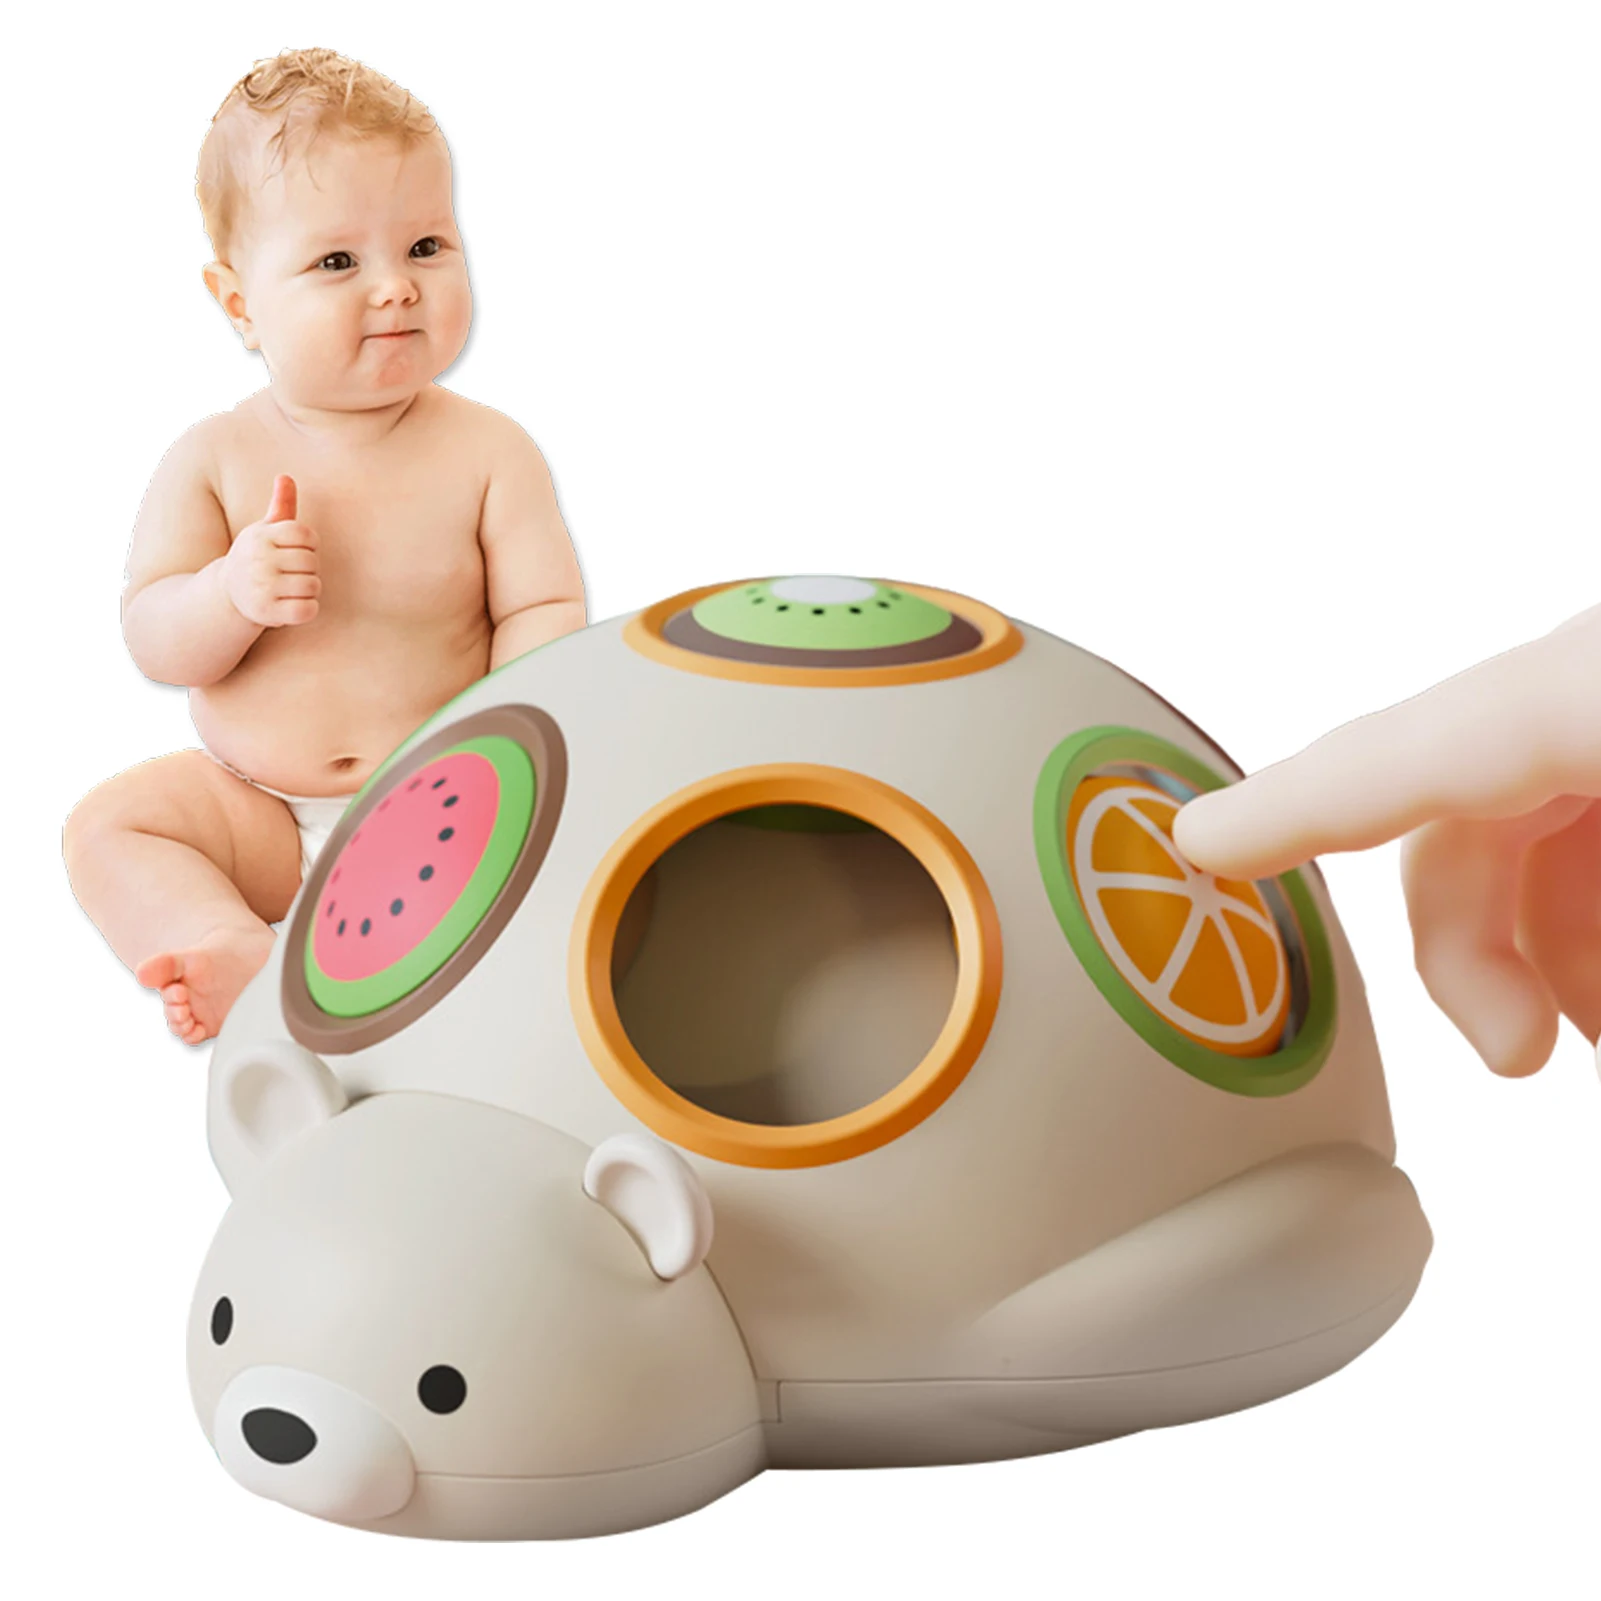 

Развивающая всплывающая игрушка Монтессори для детей 0-4 месяцев